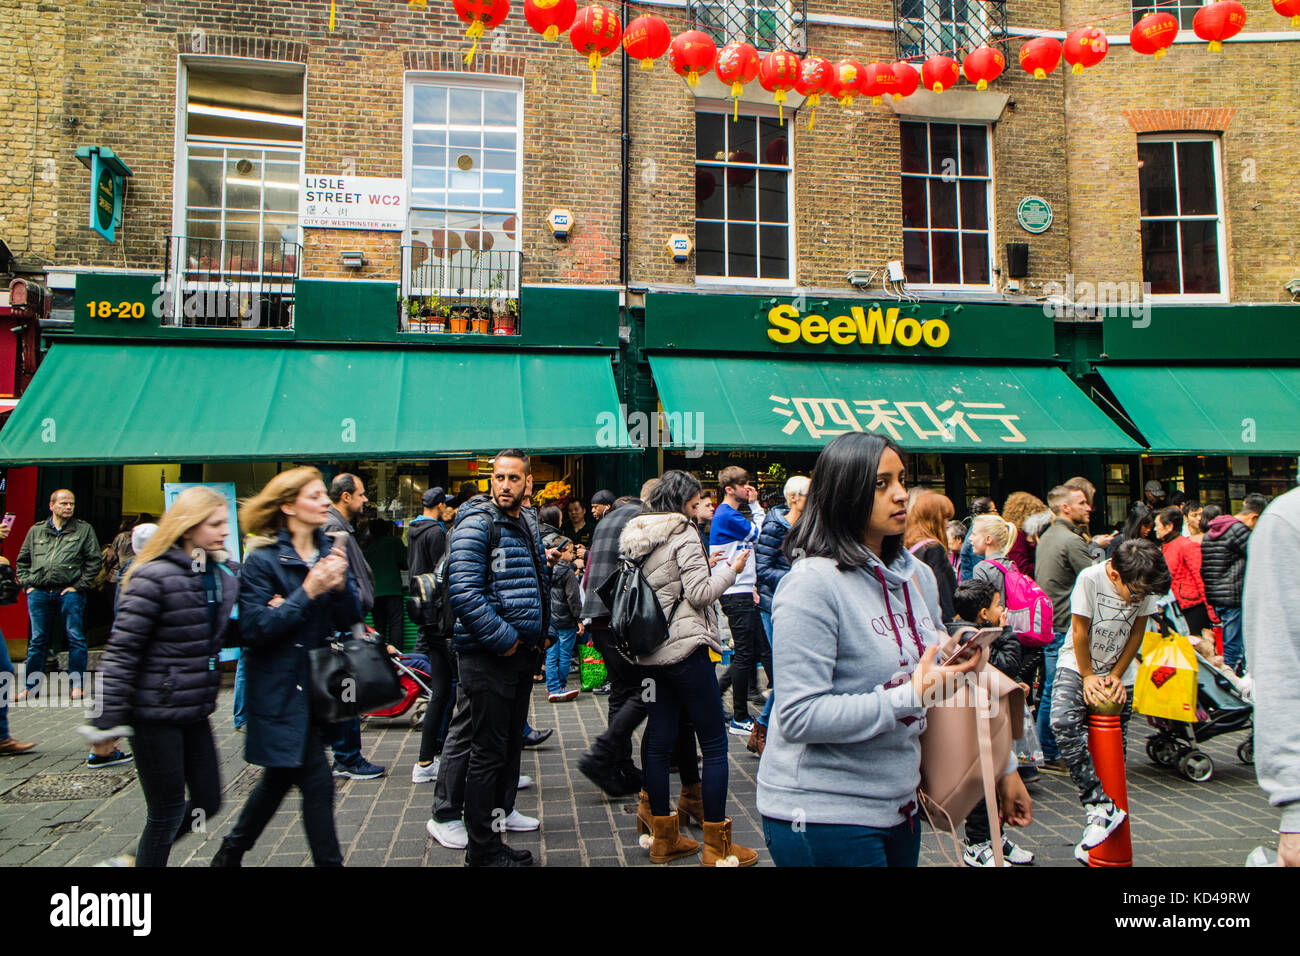 Voir woo supermarché chinois dans la région de Lisle Street, Londres, Royaume-Uni China town, oct 2017 Banque D'Images